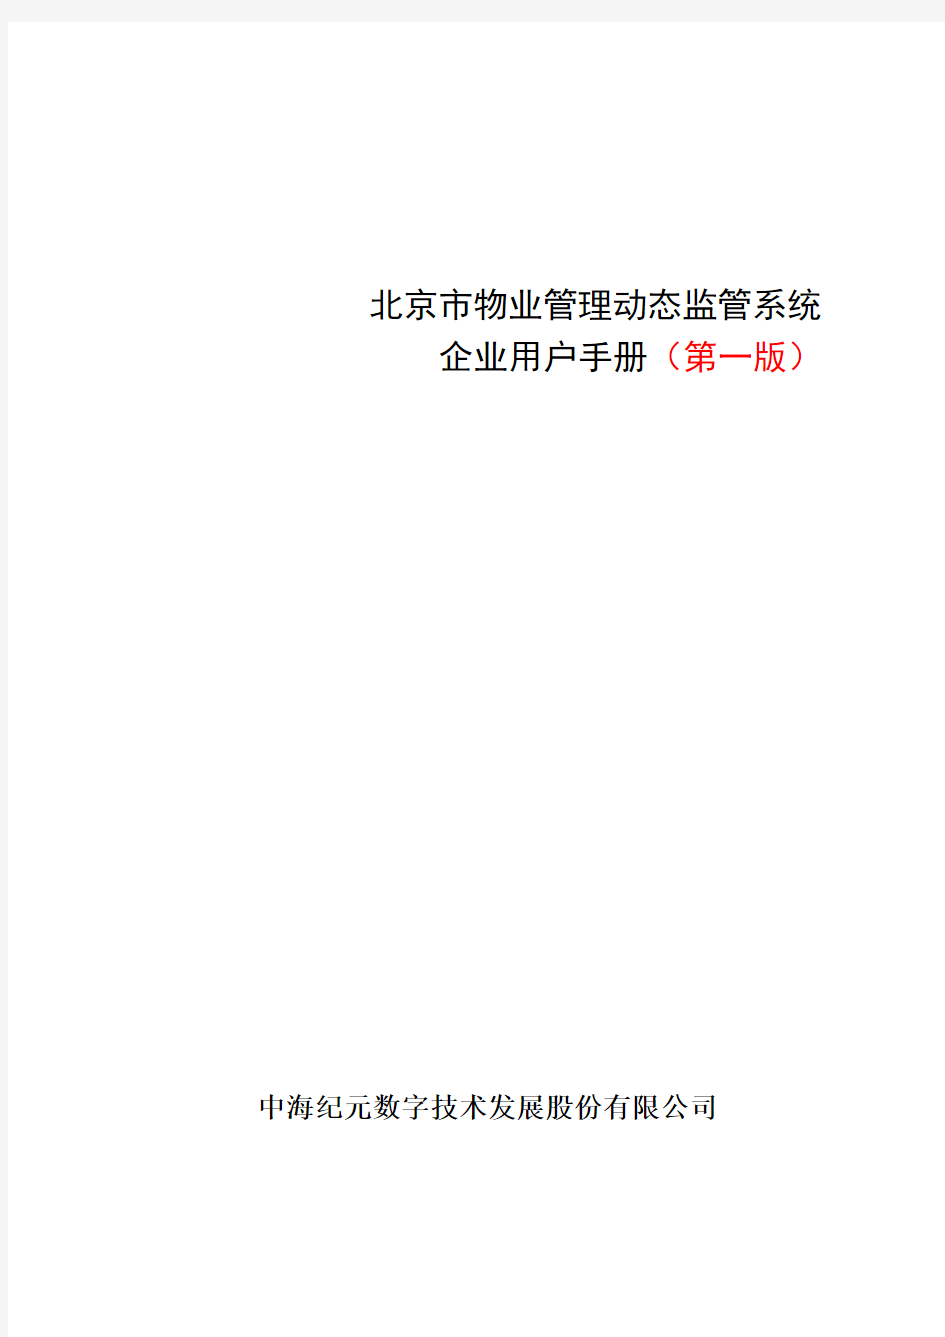 北京市物业管理系统操作说明书。